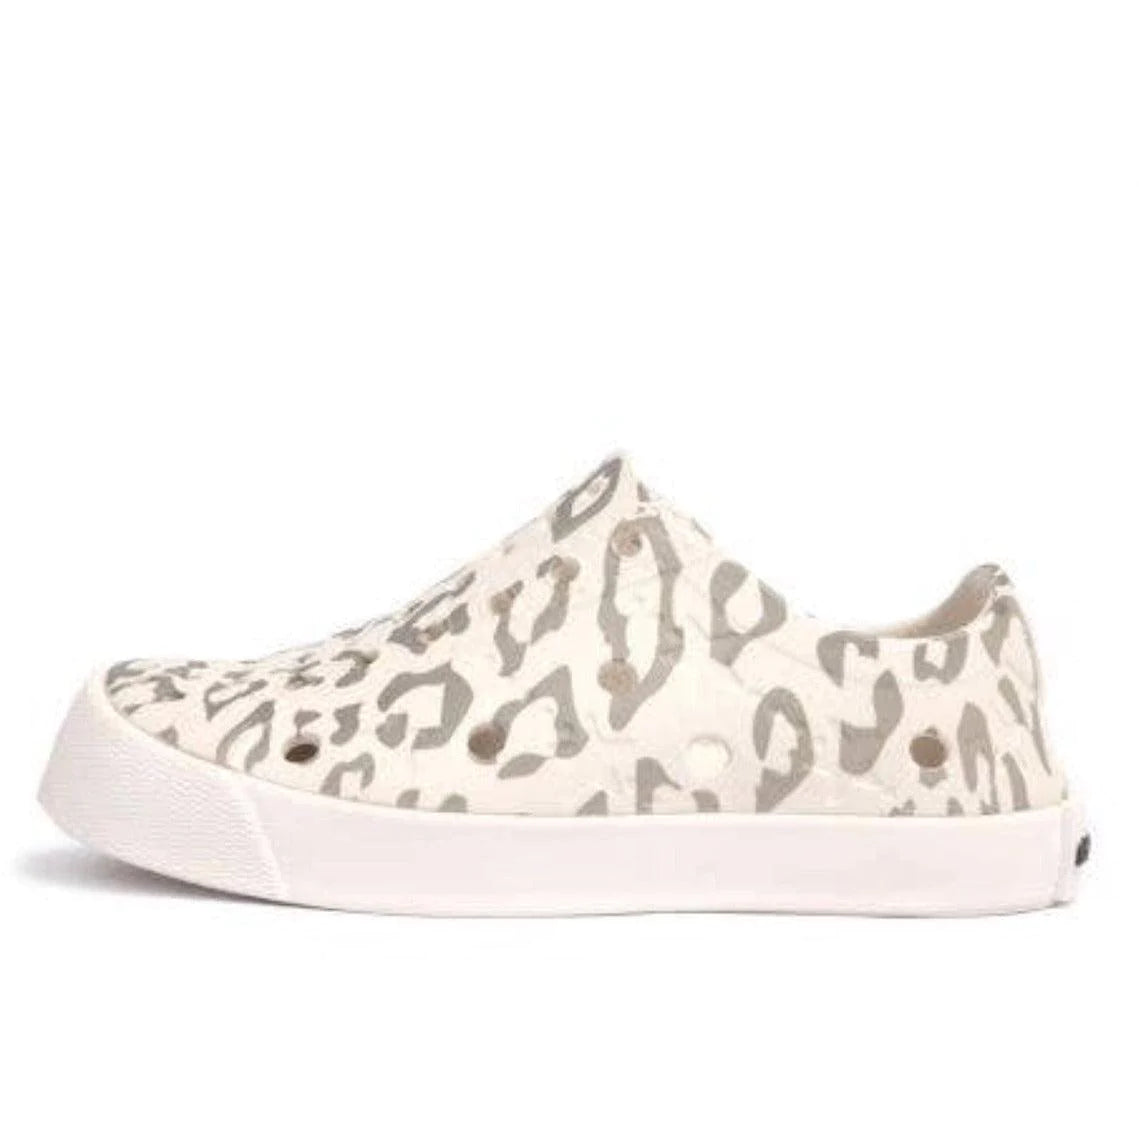 Kid's Waterproof Sneakers with leopard Print